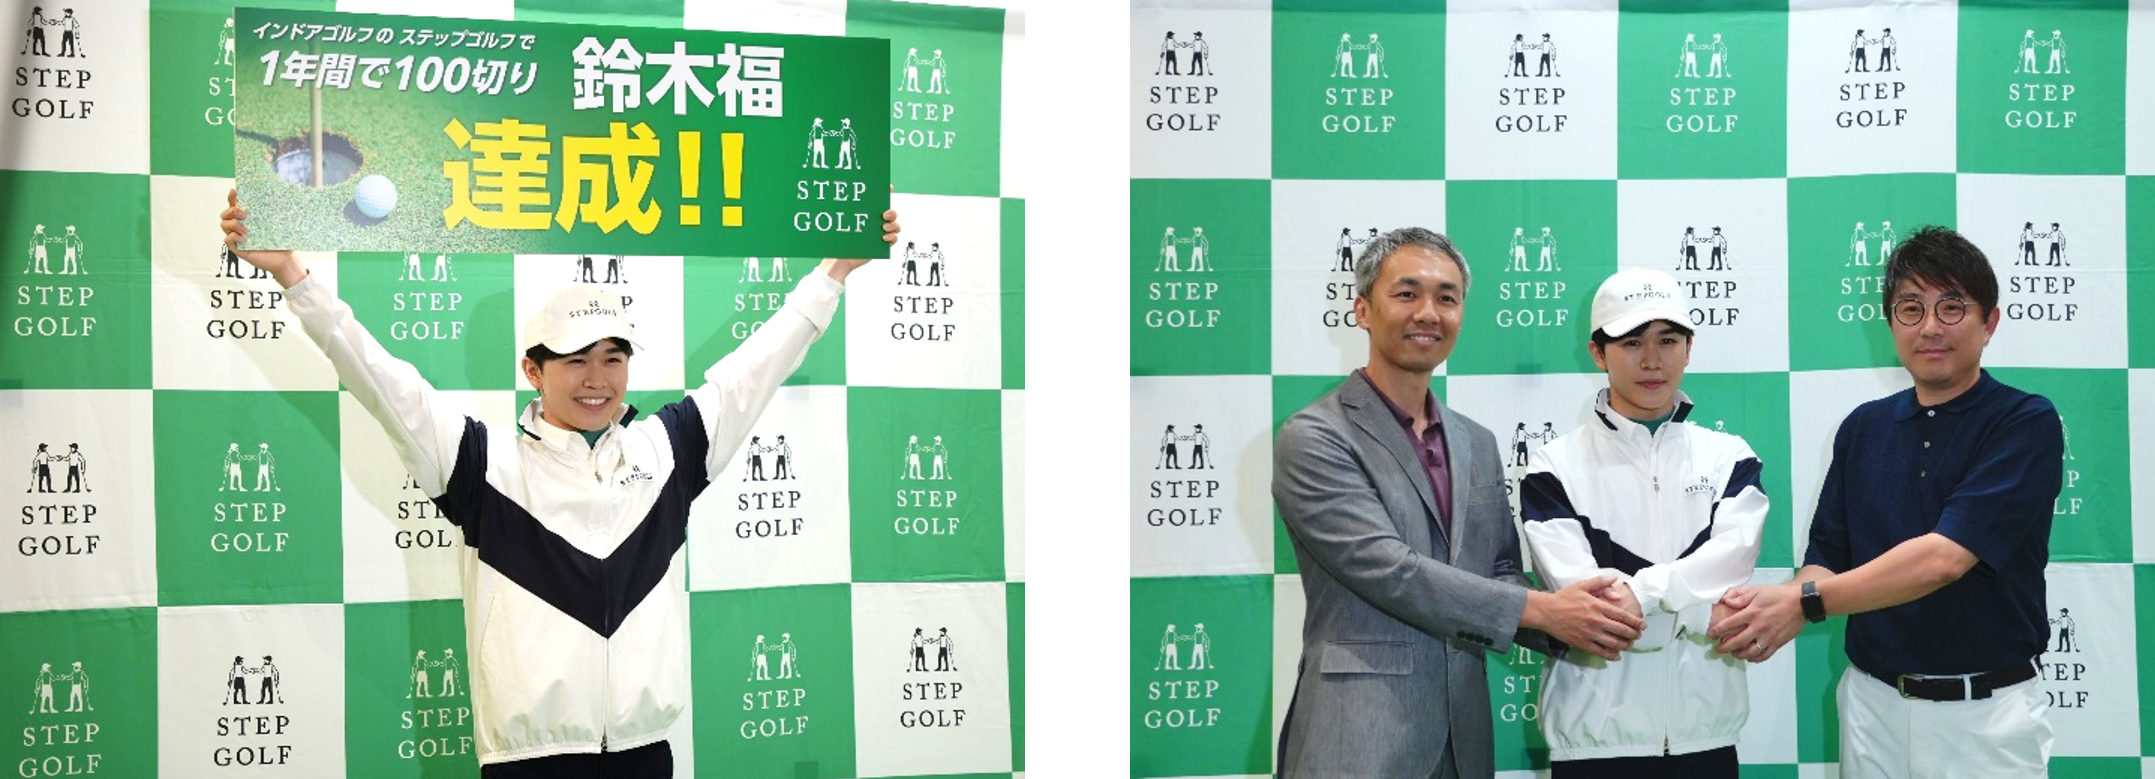 インドアゴルフスクール「ステップゴルフ」で挑戦した1年鈴木福くん　スコア91で100切り達成を発表！達成記念のキャンペーン7月5日から開始のサブ画像1